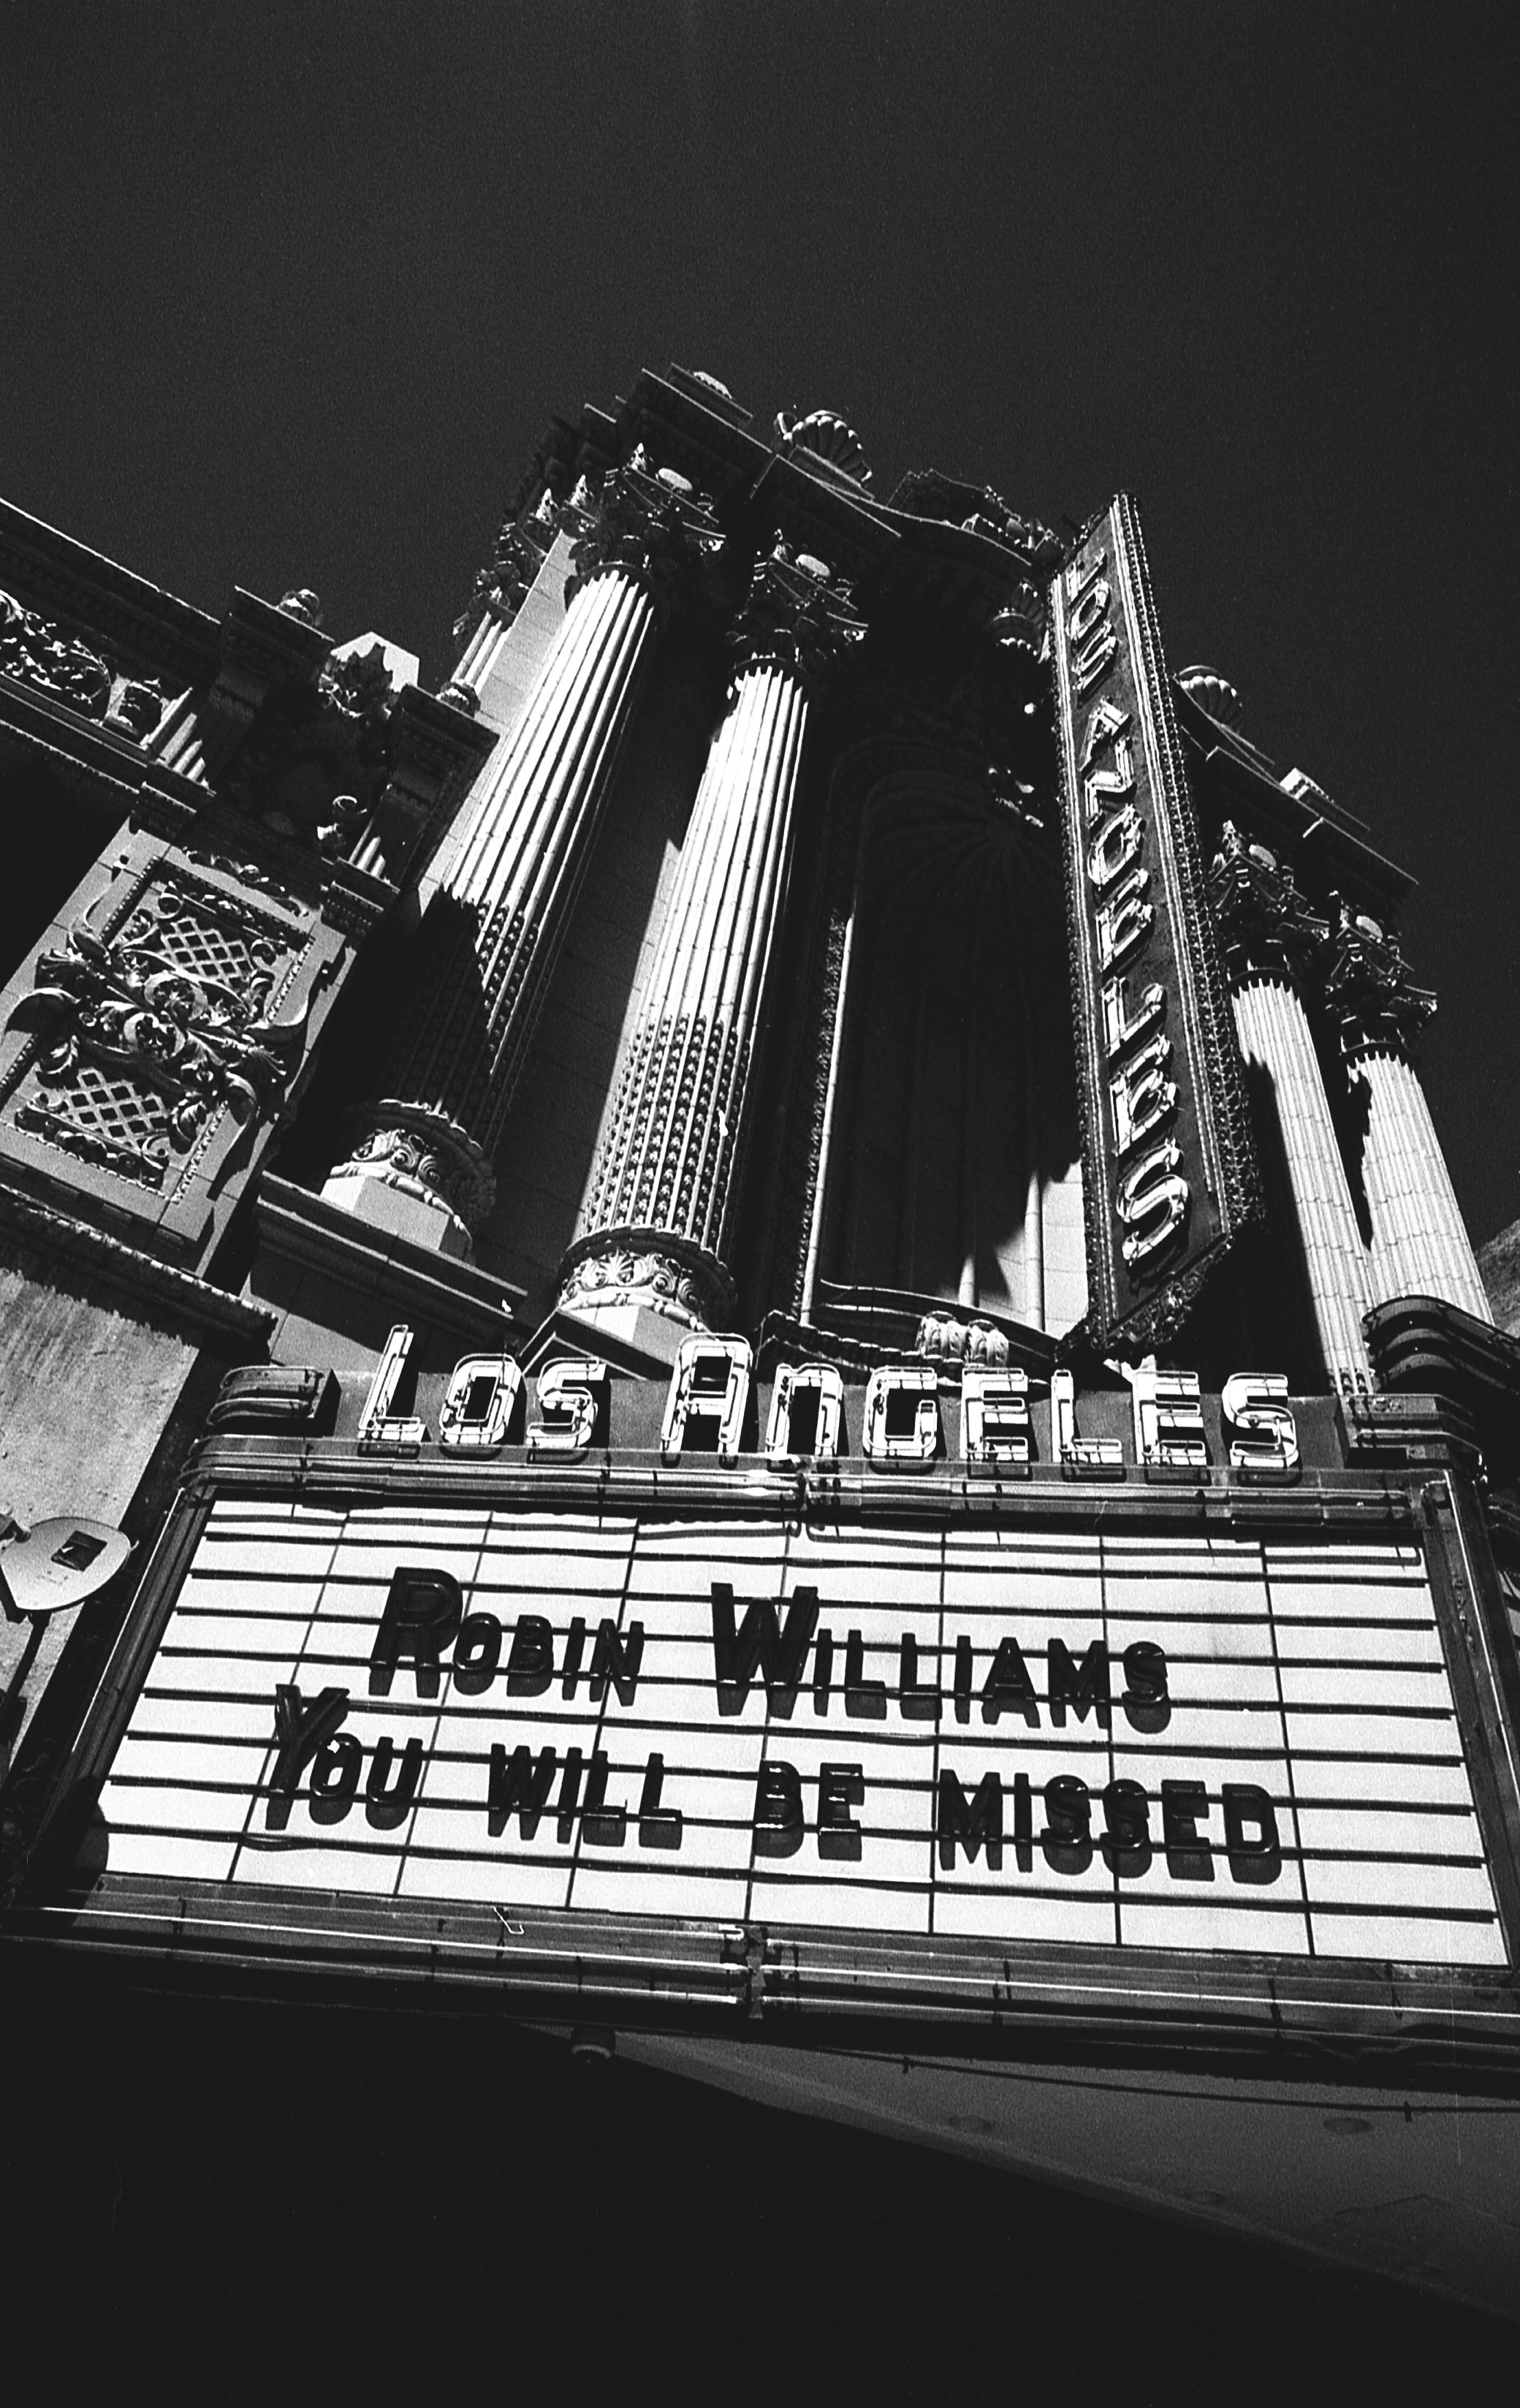 Robin Williams Memorial, Downtown, LA